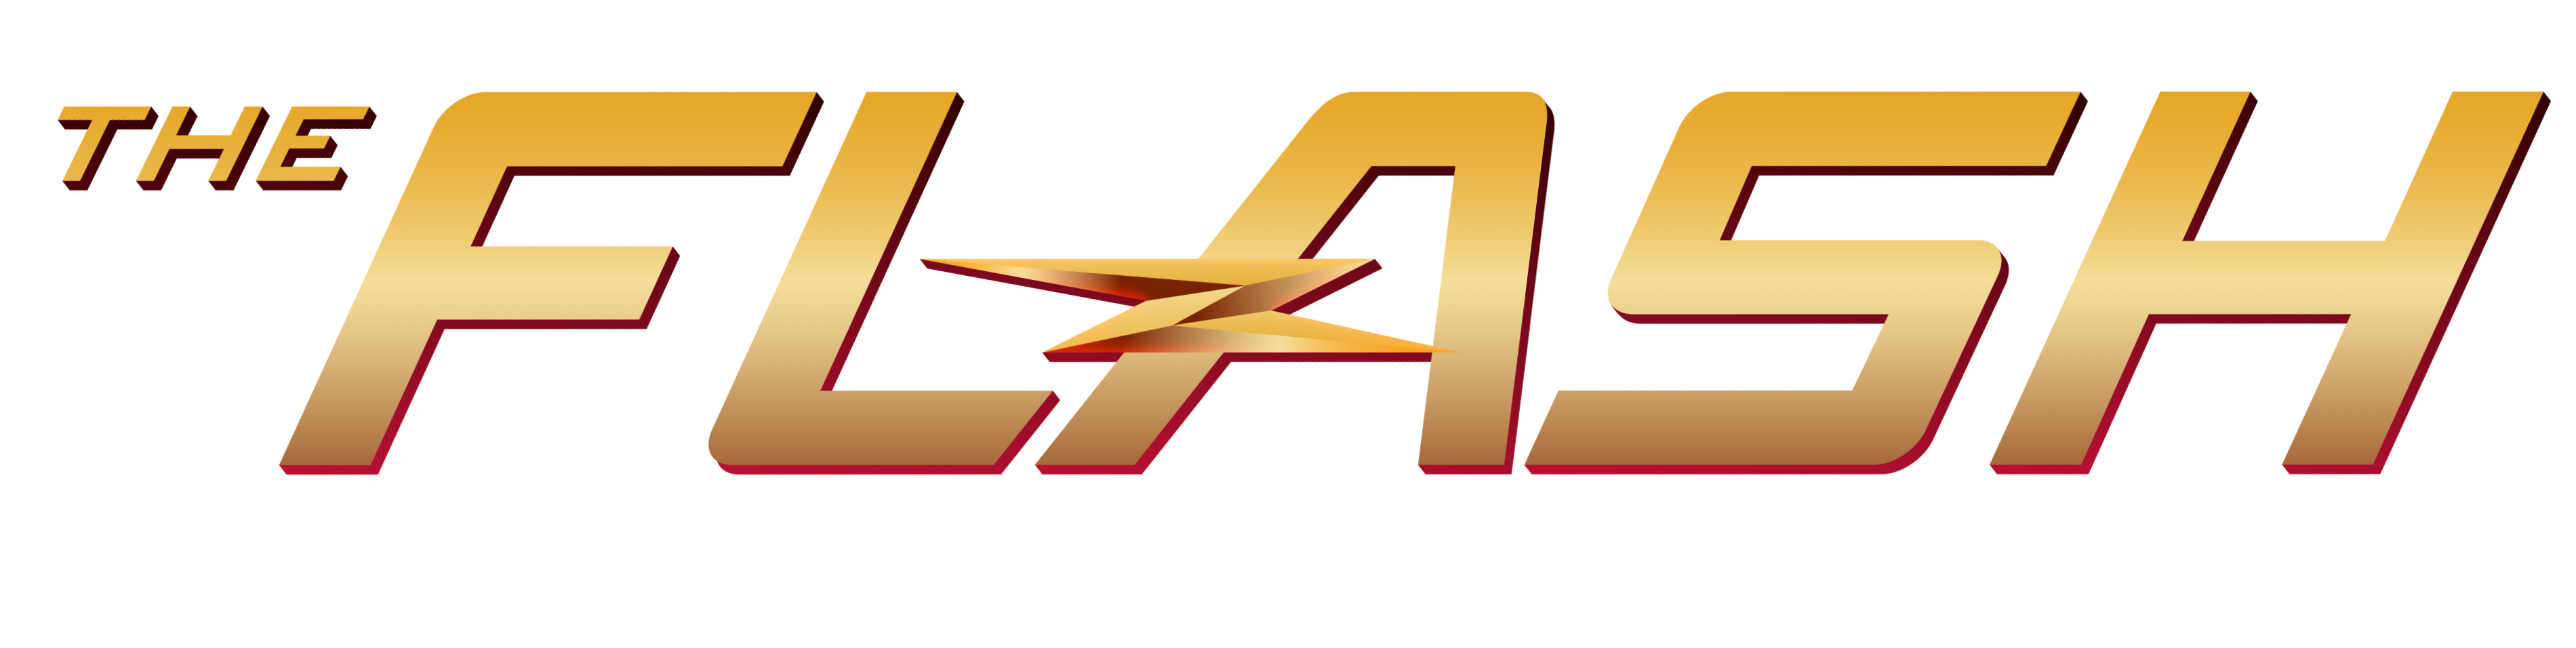 Il logo della serie televisiva The Flash